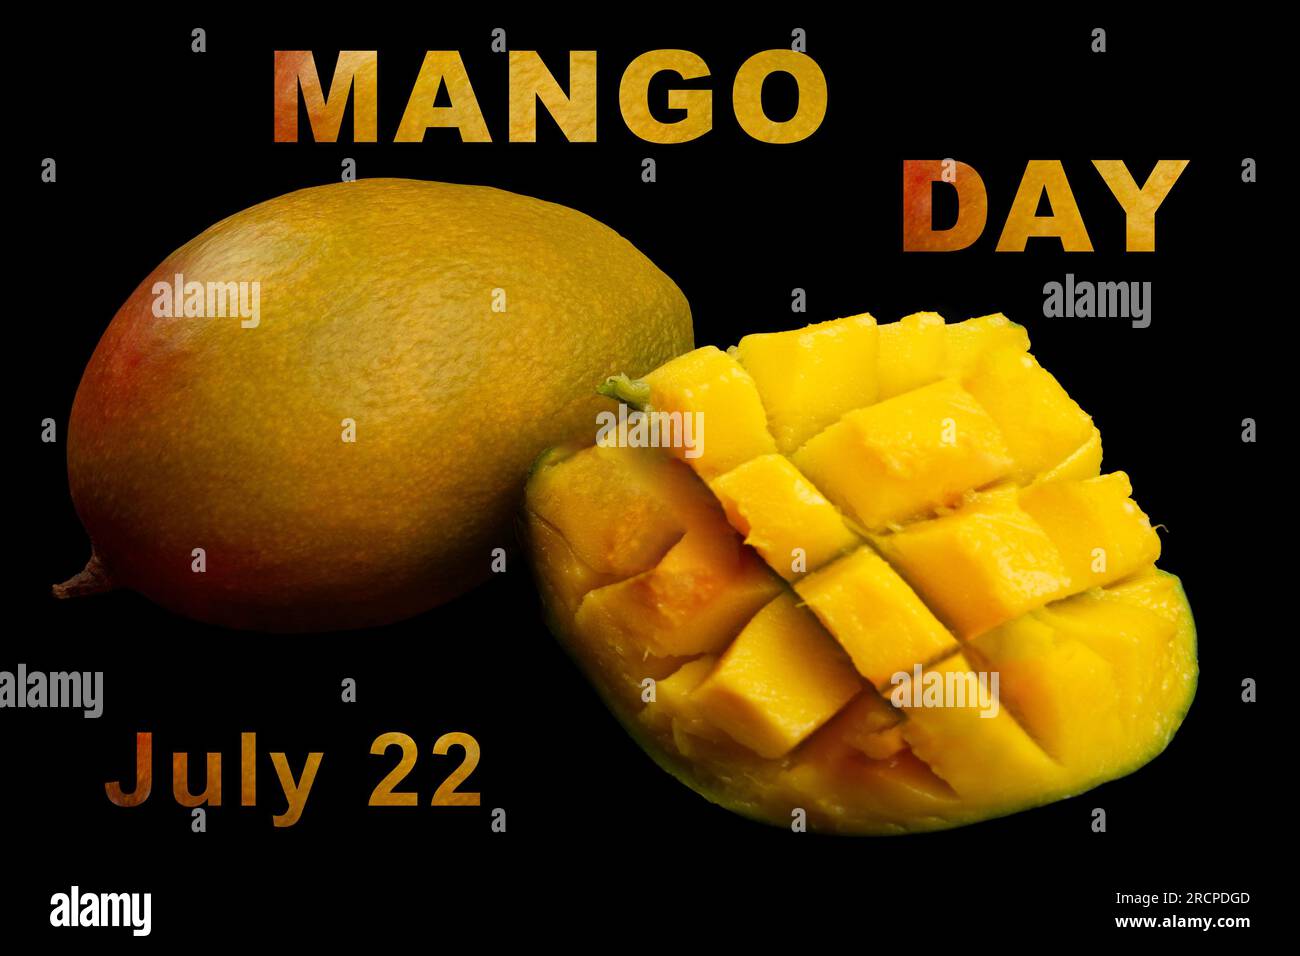 Mangue entière et demi-mangue tranchée sur fond noir avec texte : 'Mango day. Juillet 22' Banque D'Images